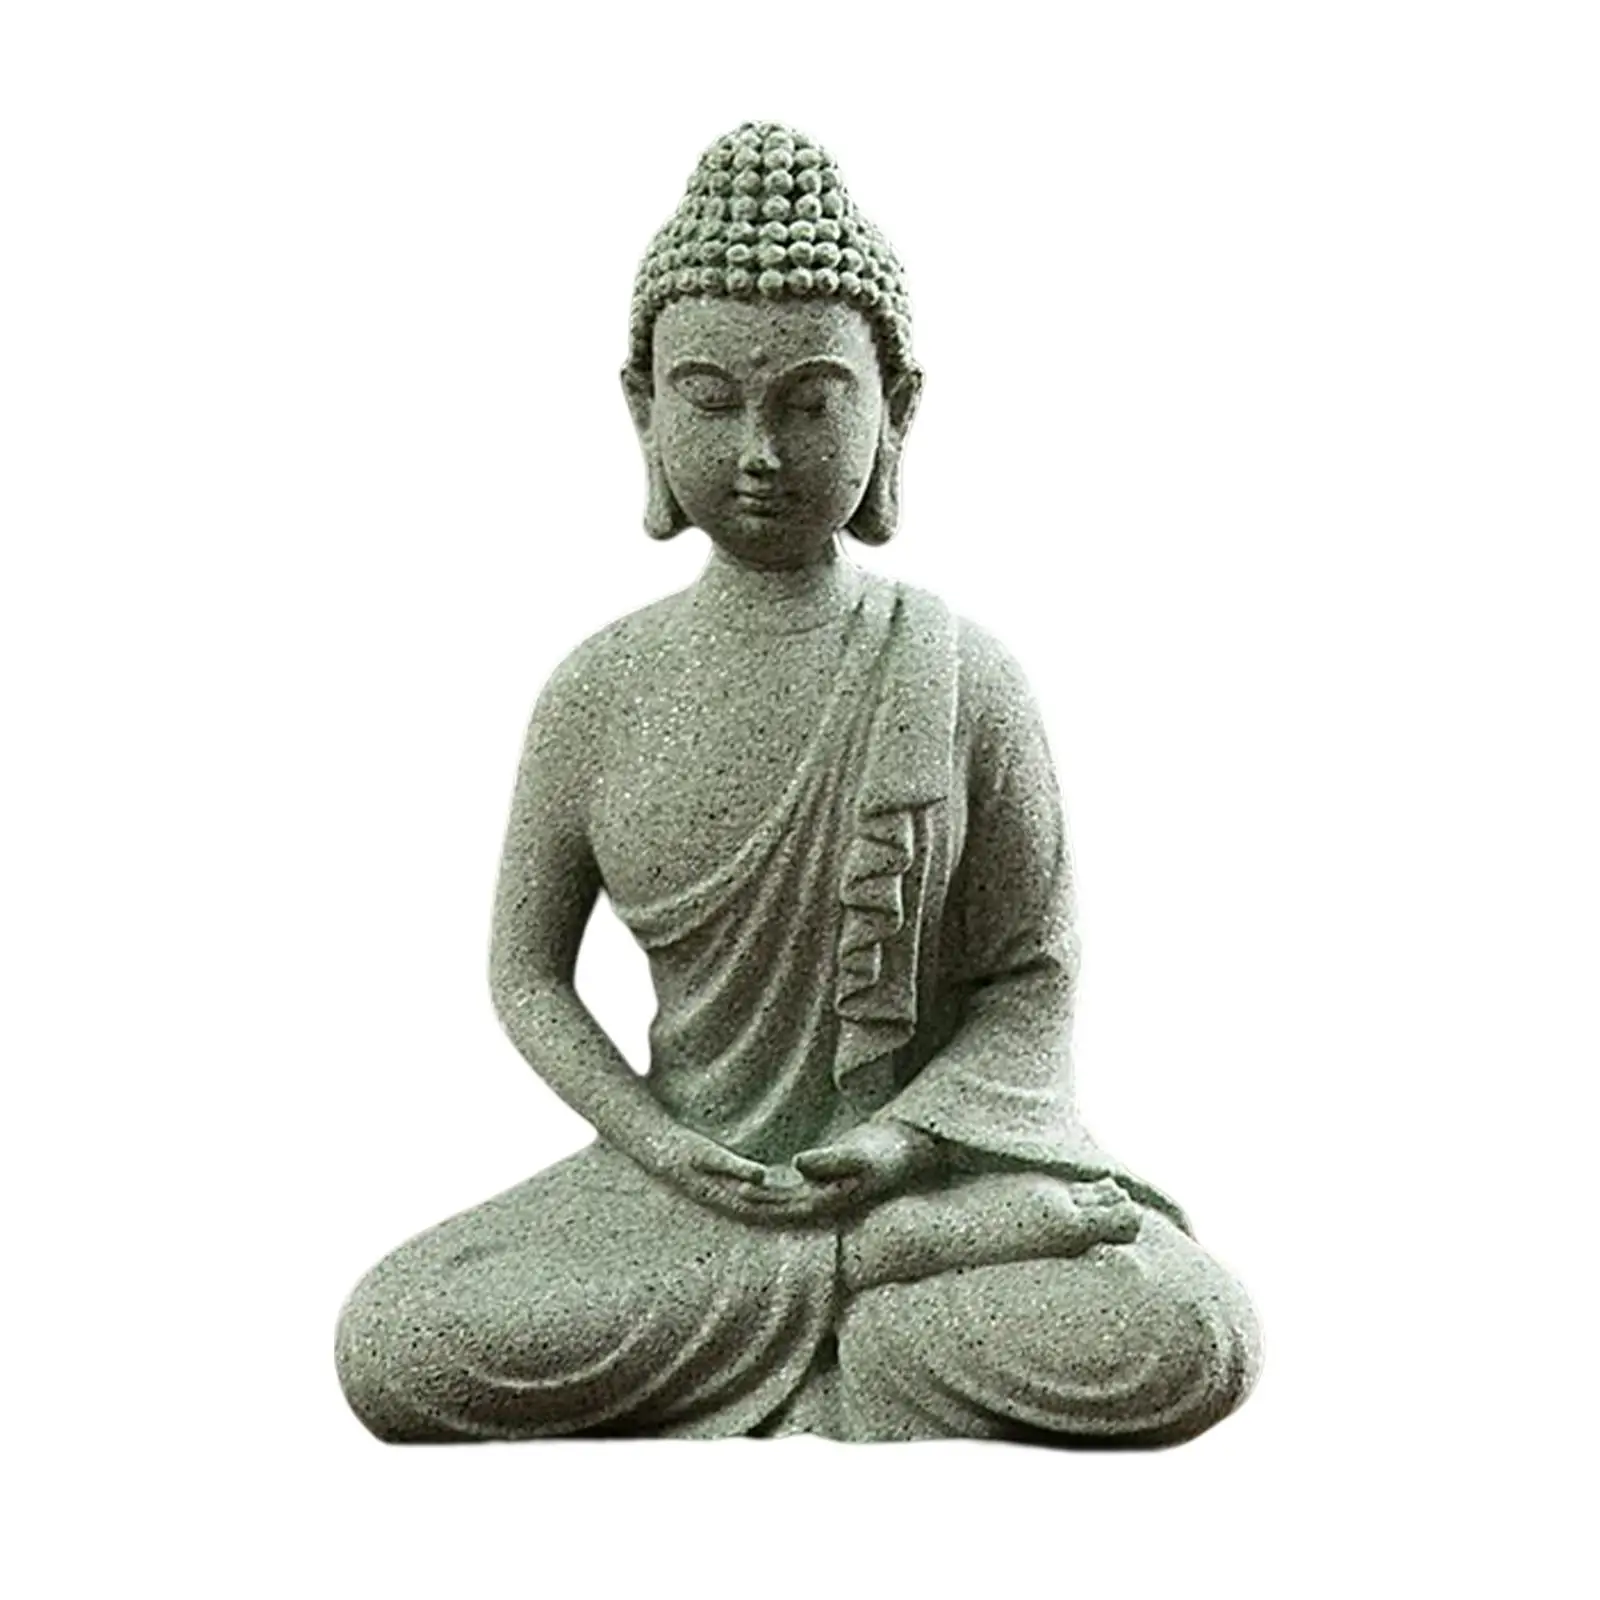 Mały budda posąg Ornament joga figurki rustykalny orientalny dekoracyjny do medytacji biurka biurka